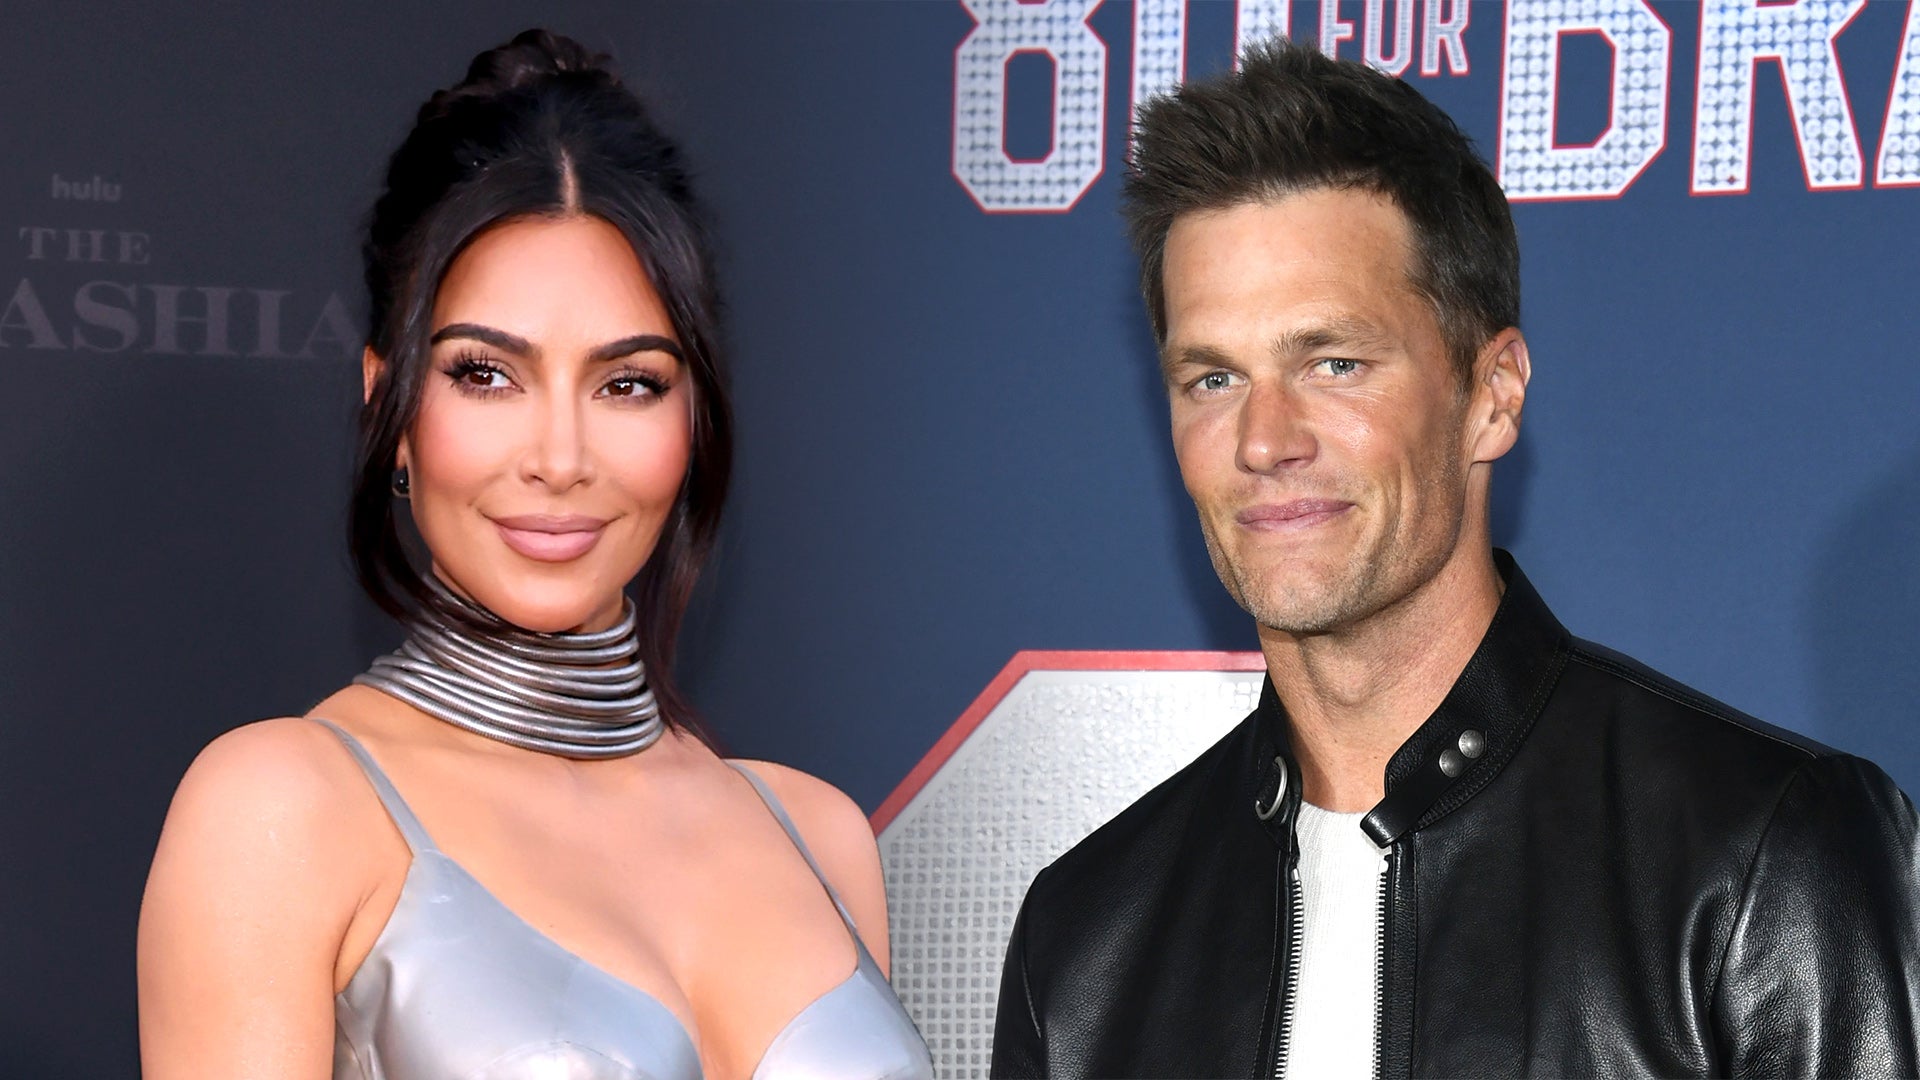 Why is 'Kim Kardashian and Tom Brady' trending?